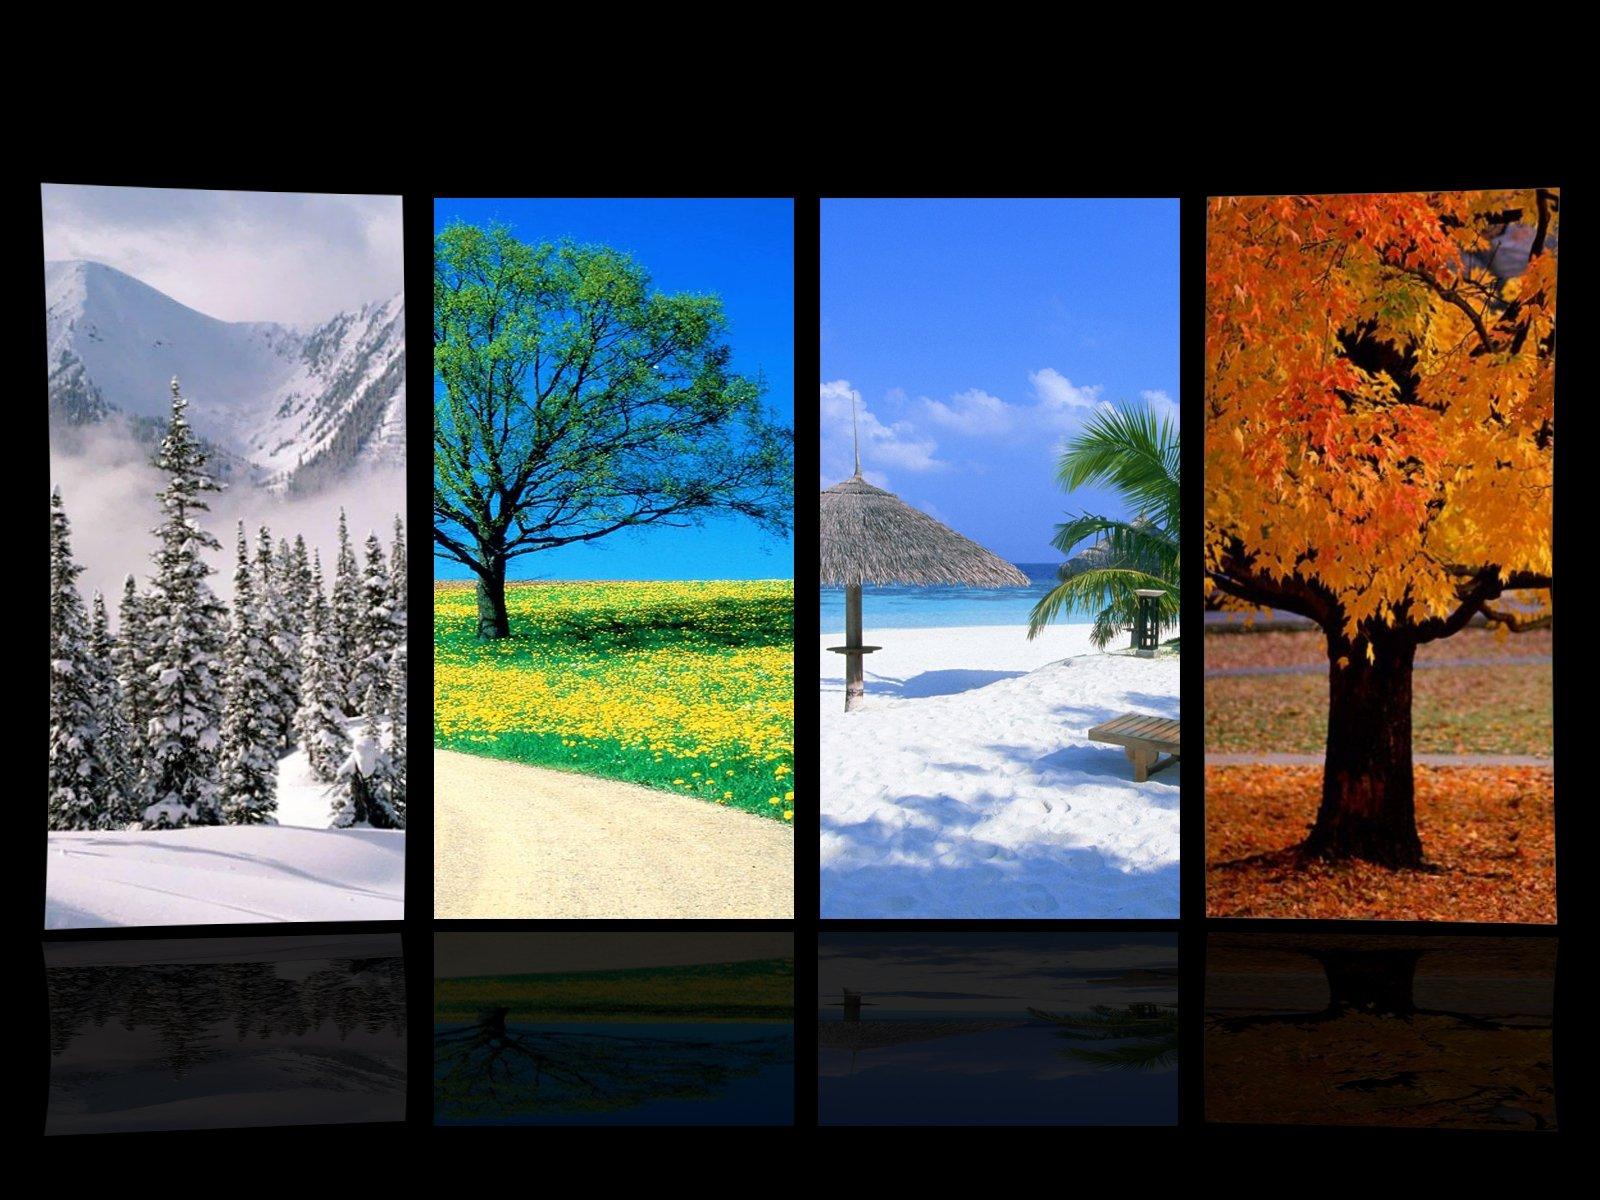 Картинки с изображением зима лето (69 фото) » Картинки и статусы про  окружающий мир вокруг